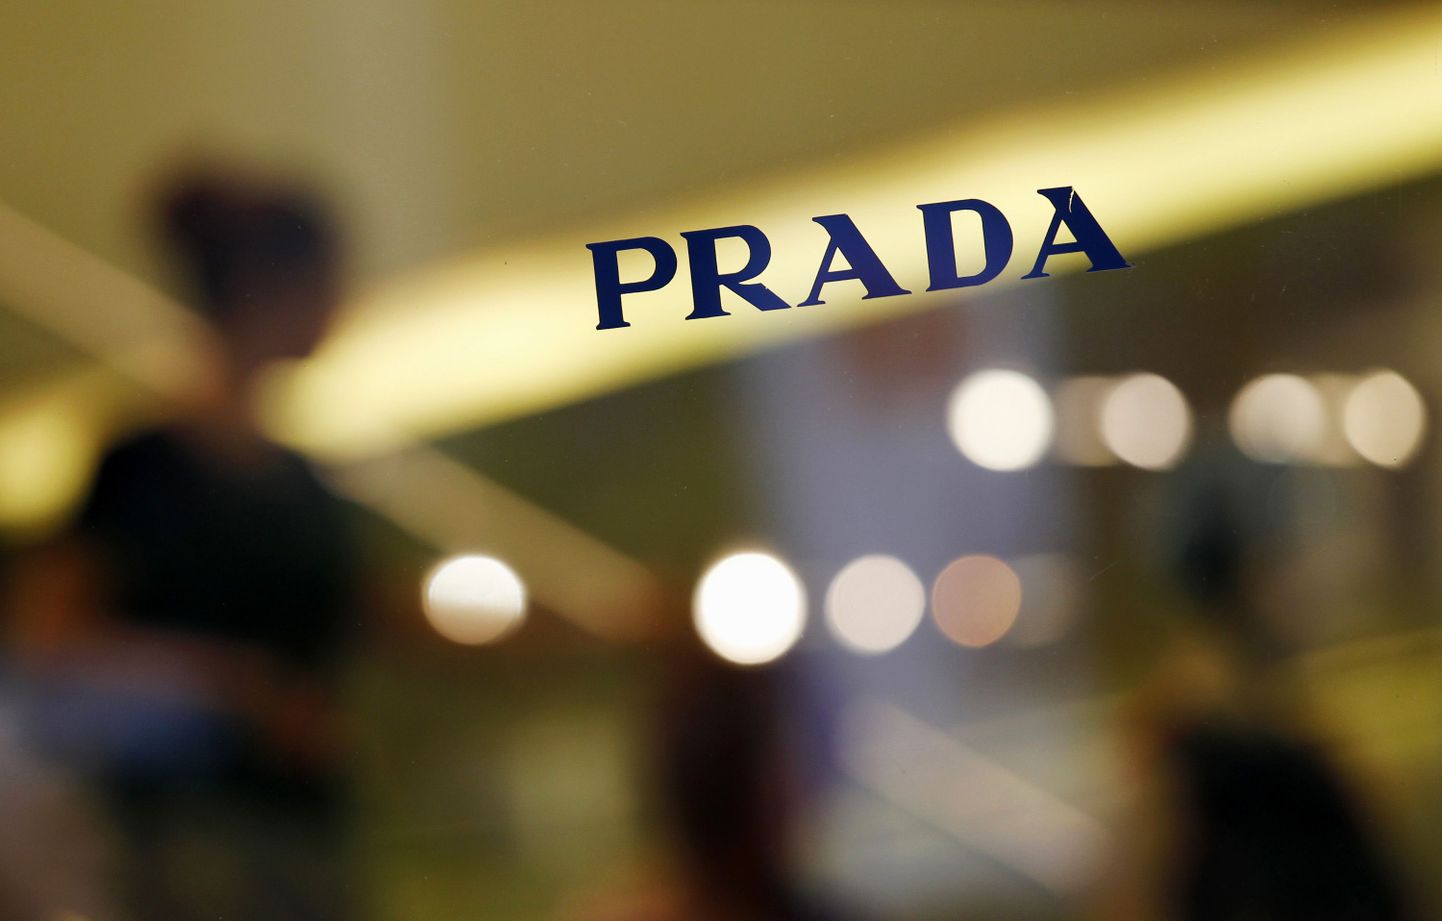 Suurimat müügiedu oodatakse aastatel 2010-2013 Pradalt, kelle aastane müügitulu aastane kasv peaks küündima 18 protsendini.